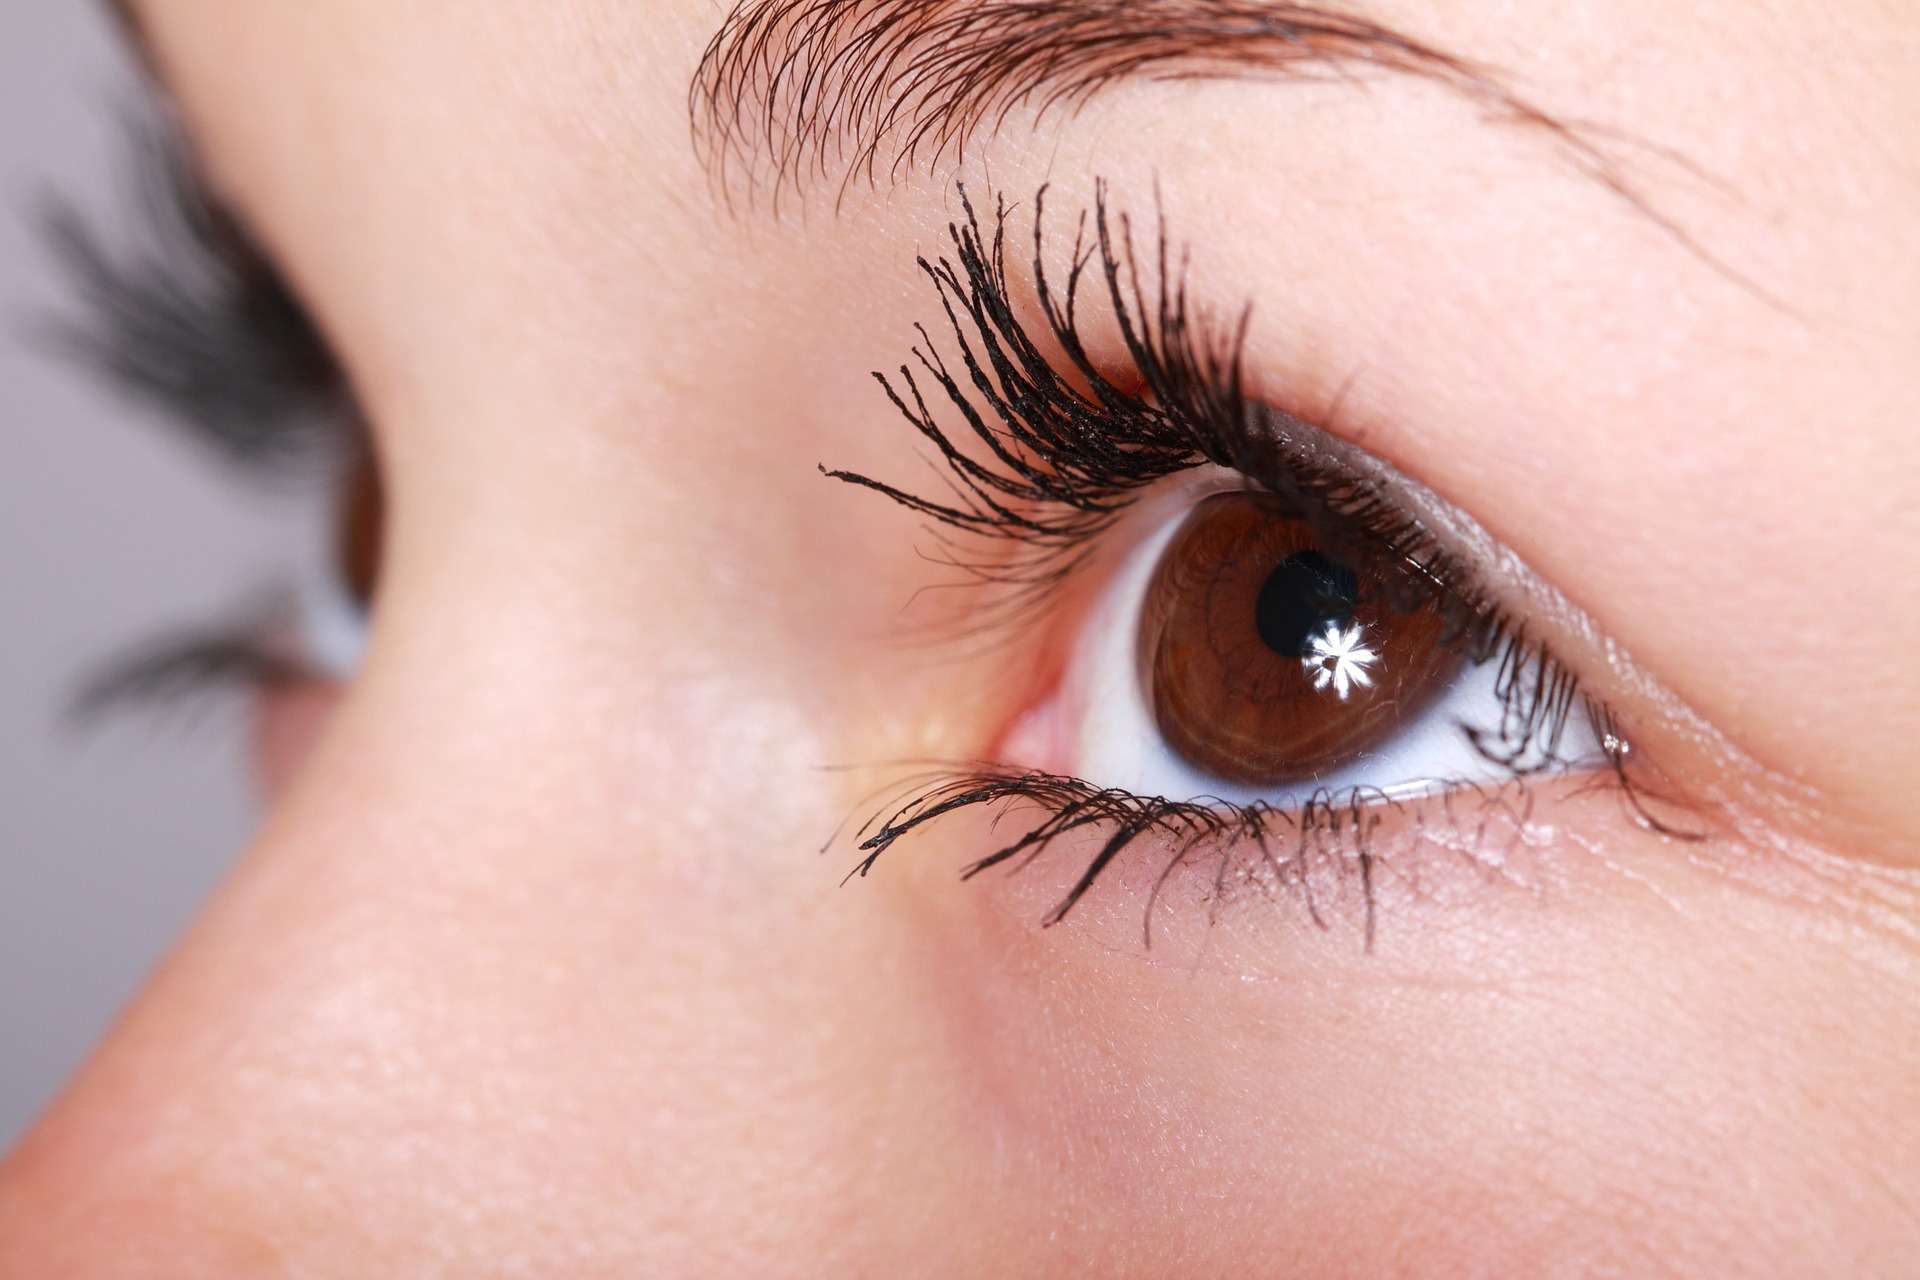 עיניים מתעוותות לעתים קרובות, מה זה אומר מהצד הרפואי?